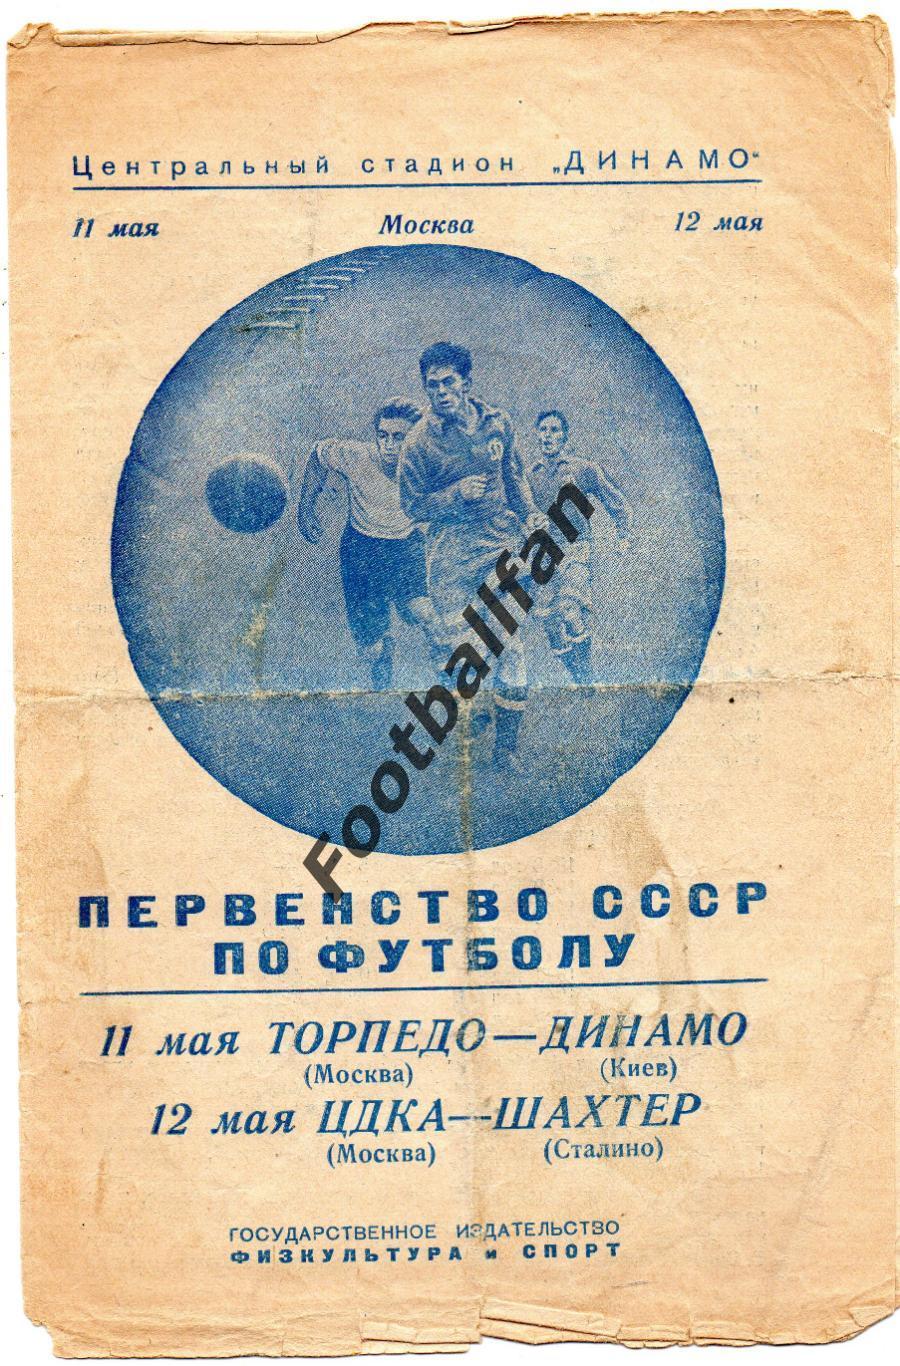 Торпедо Москва - Динамо Киев 12.05 + ЦДСА Москва - Шахтер Сталино 13.05.1950